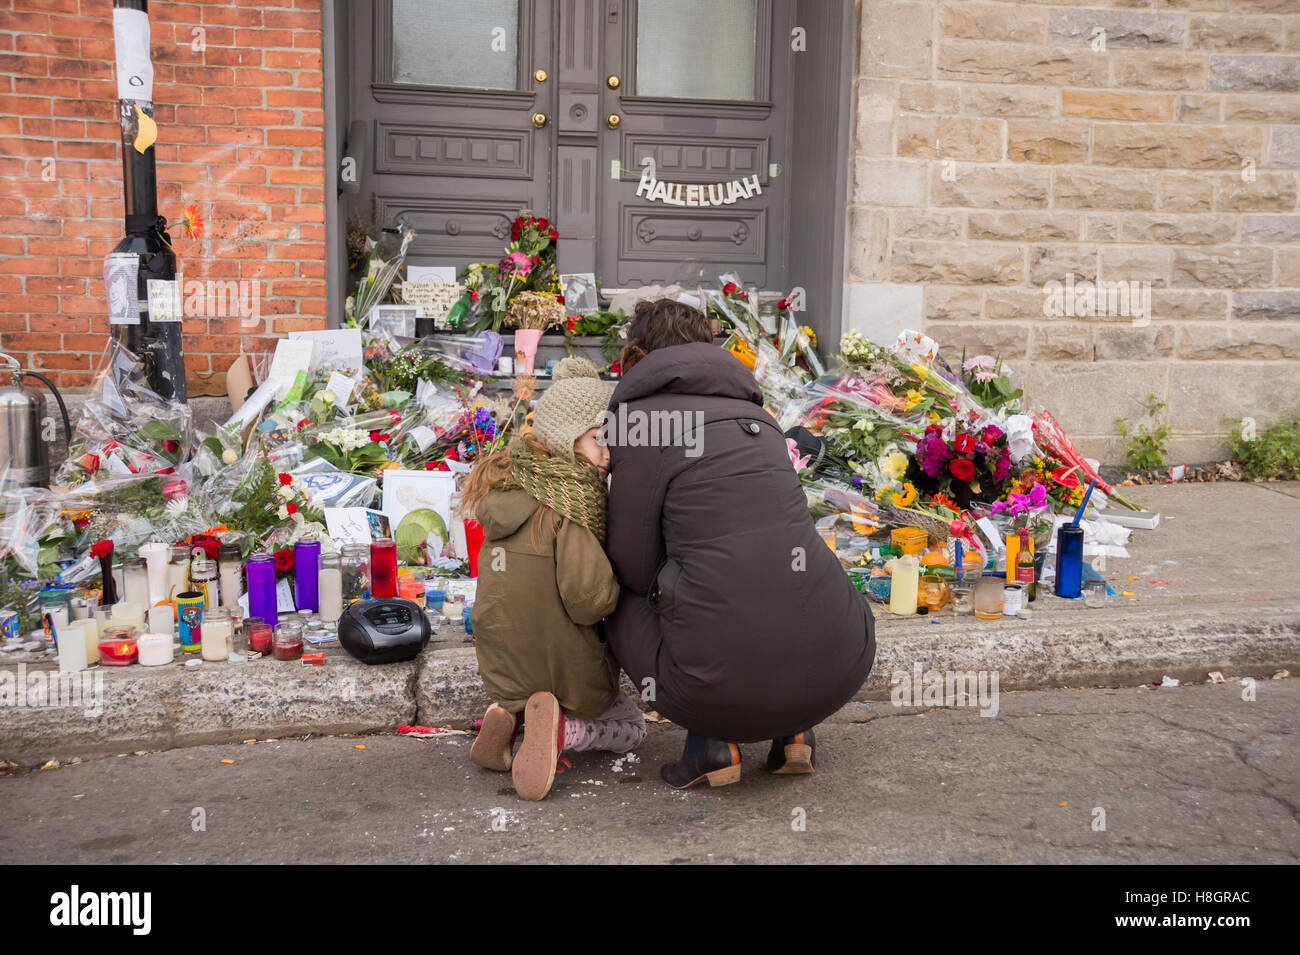 Montréal, Canada. 12 novembre, 2016. Les Montréalais se réunissent à l'extérieur de la maison de Leonard Cohen sur Vallières rue pour rendre hommage à l'artiste qui est mort le 7 novembre dernier. Crédit : Marc Bruxelles/Alamy Live News Banque D'Images